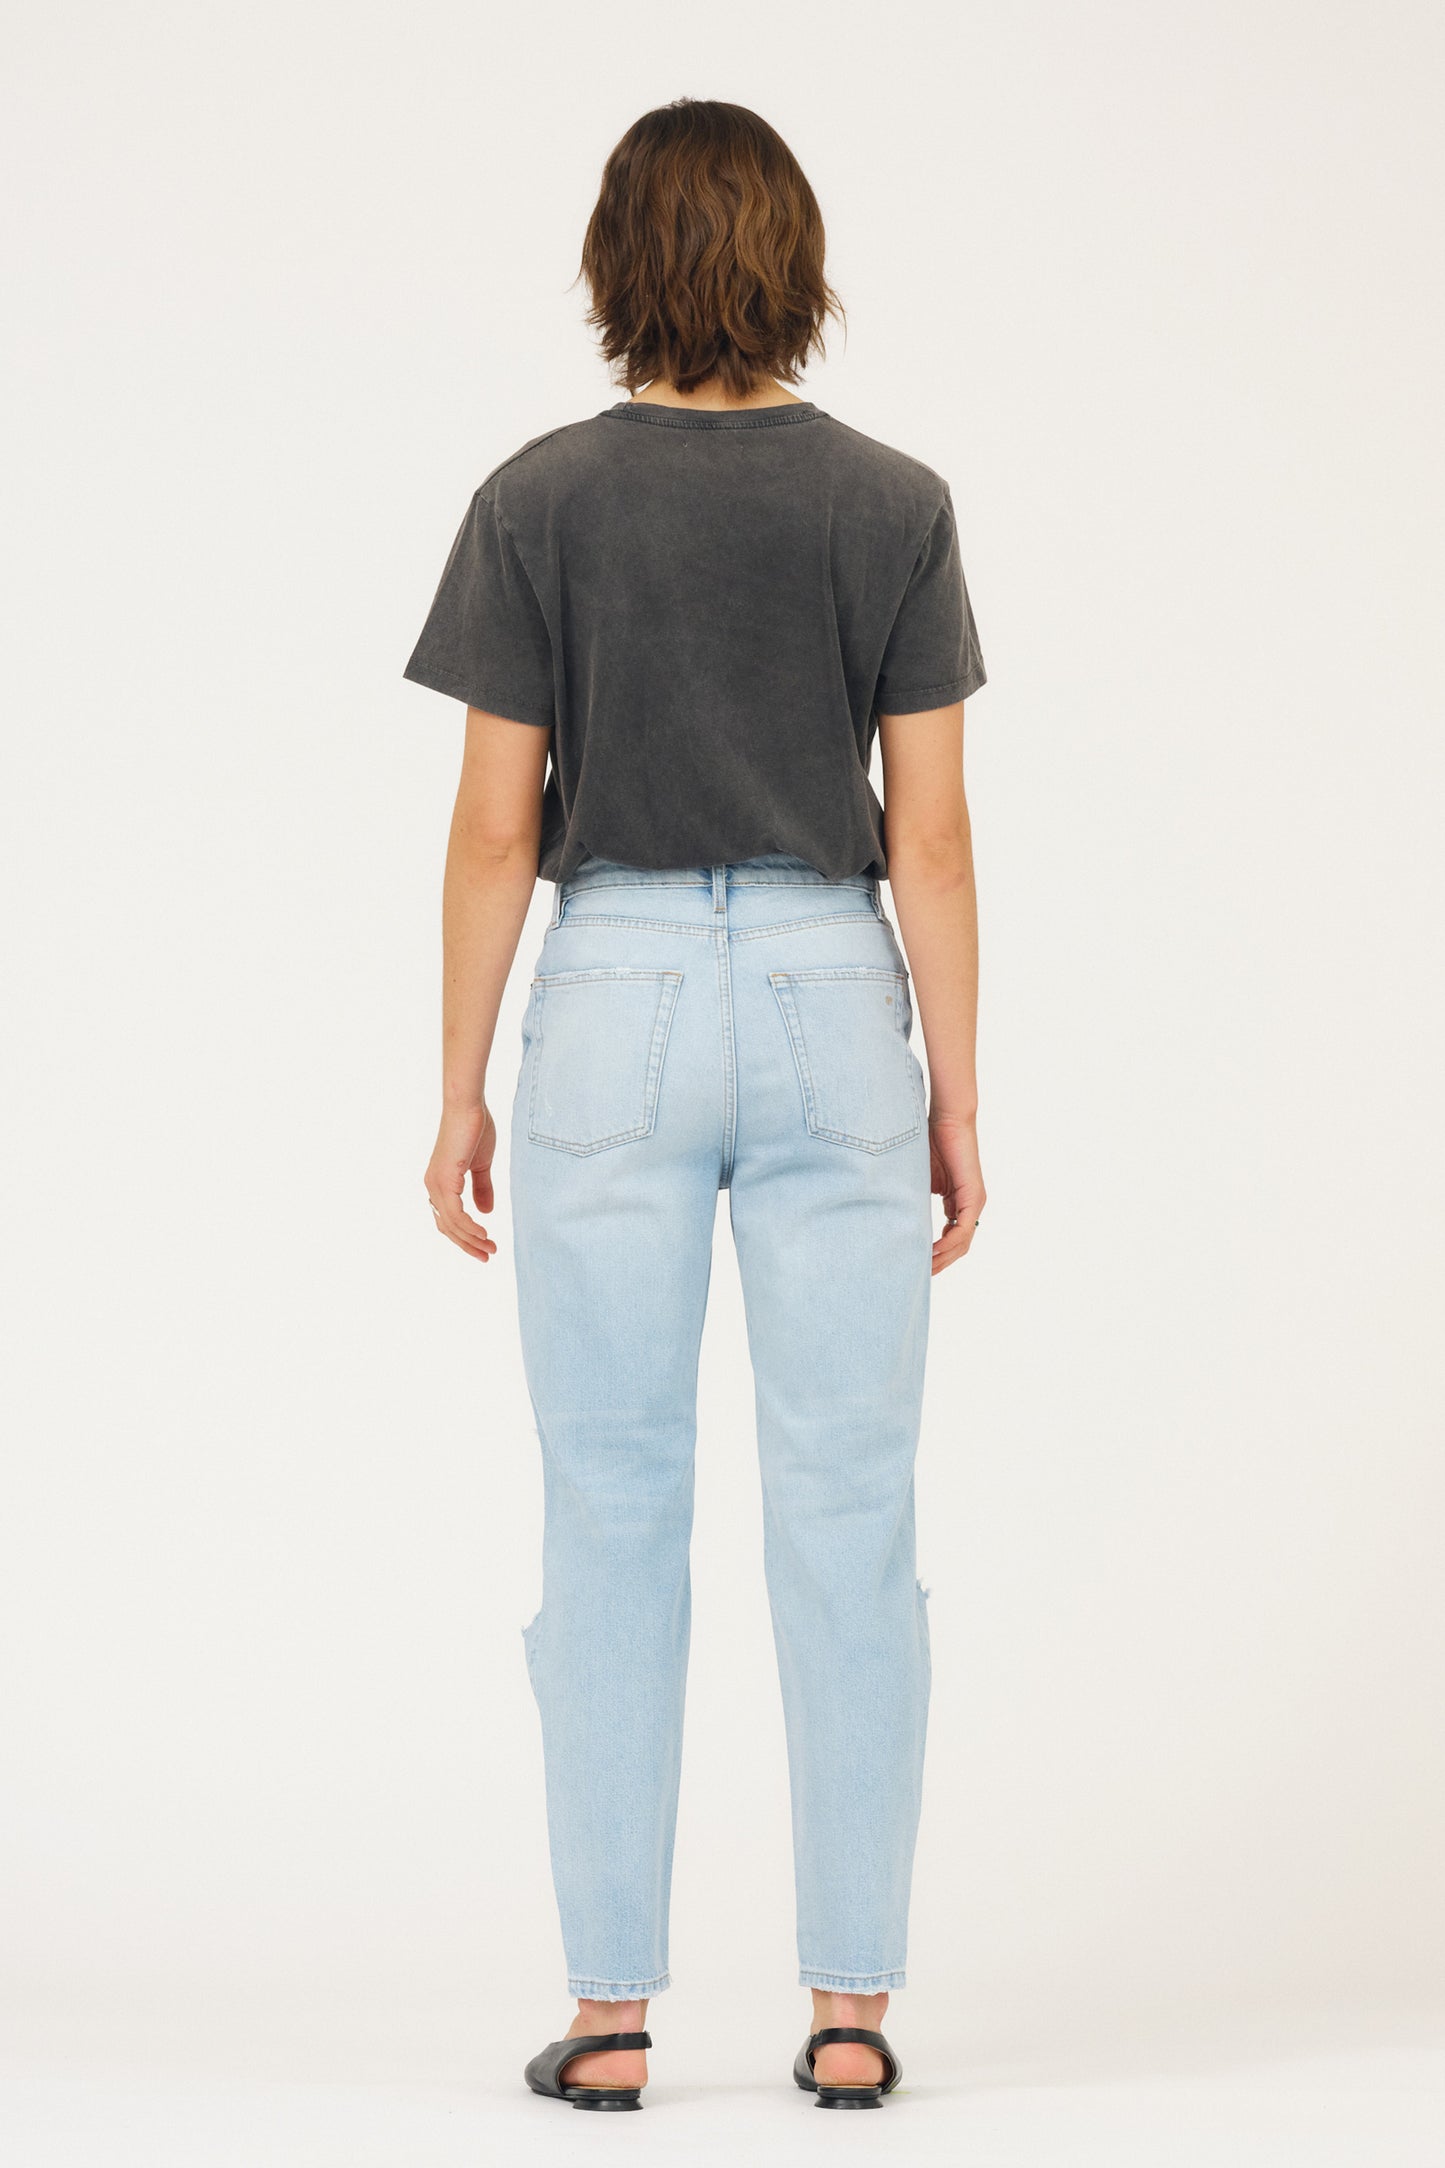 IVY Copenhagen IVY-Angie Jeans Wash Puerto Banus Dist. Jeans & Pants 51 Denim Blue